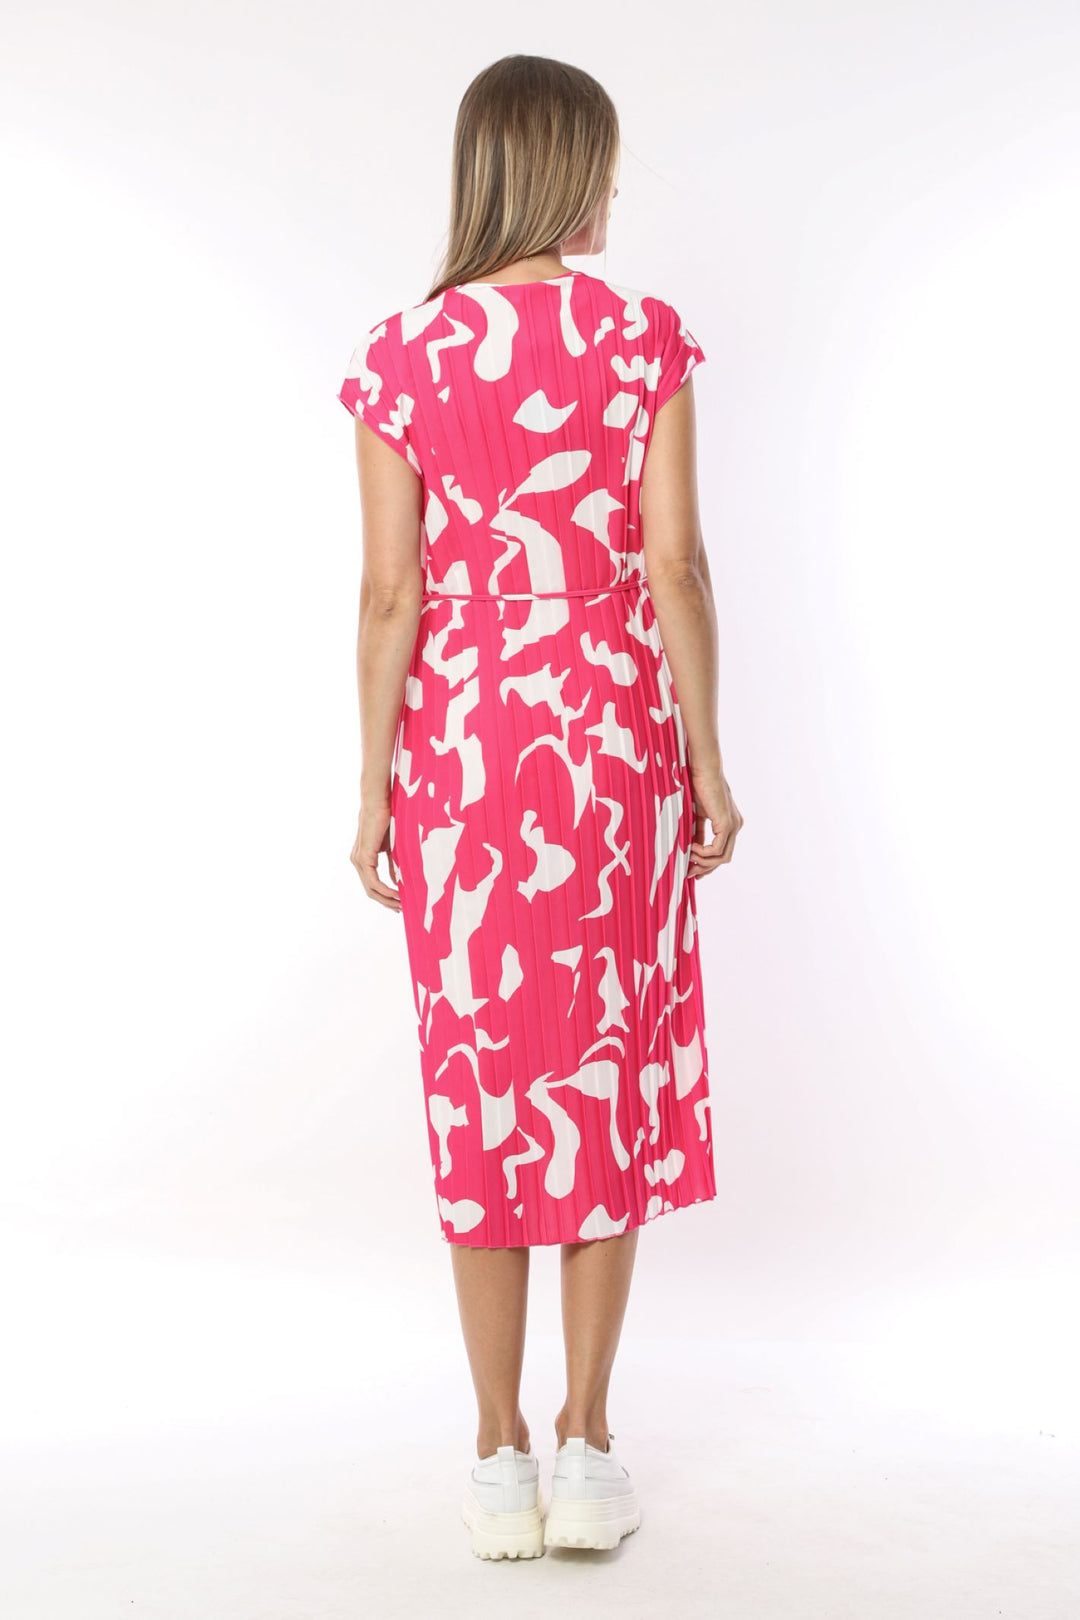 I.nco 2102 Hot Pink Short Sleeved Dress